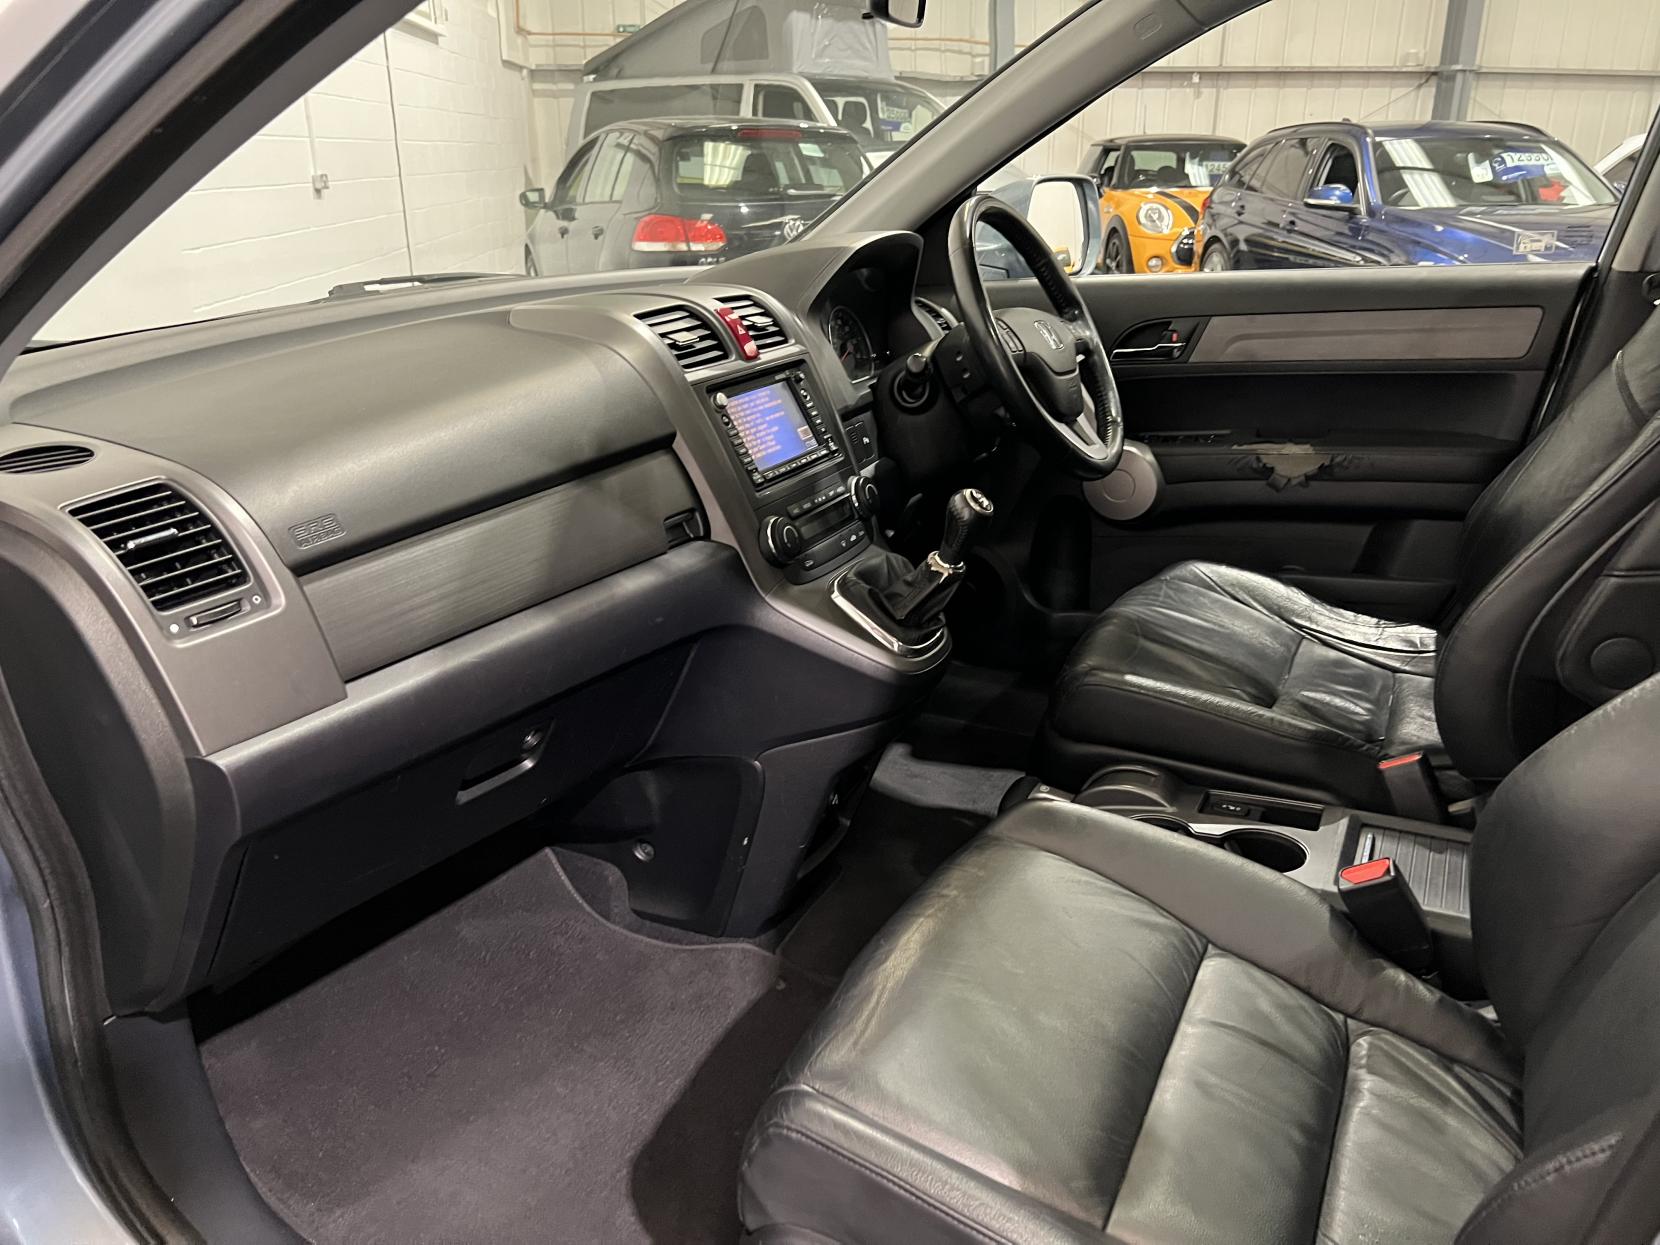 Honda CR-V 2.2 i-CDTi EX SUV 5dr Diesel Manual (173 g/km, 138 bhp)